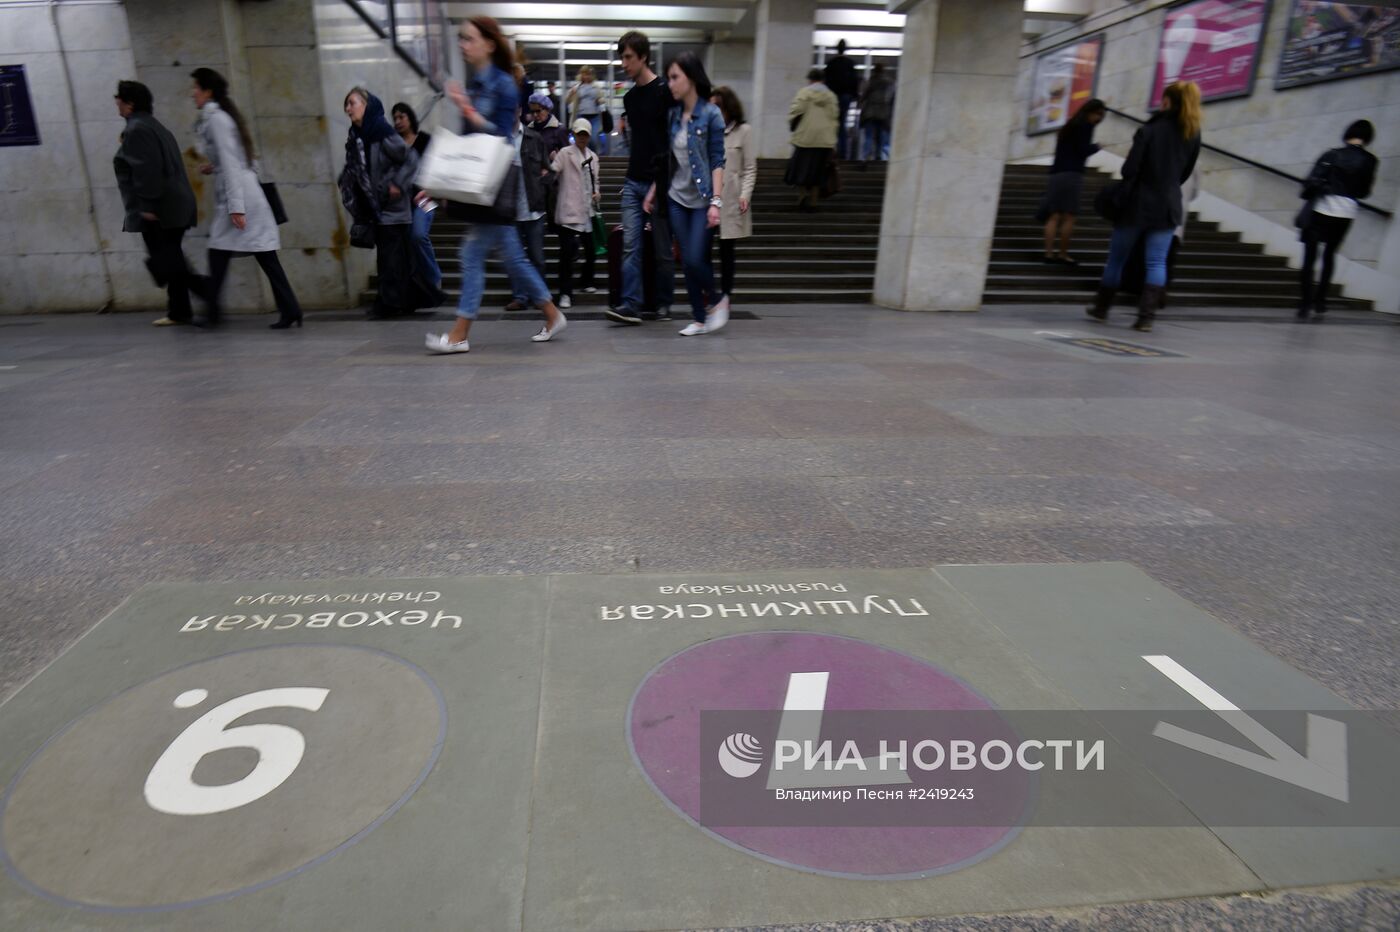 Новая напольная навигация в Московском метрополитене